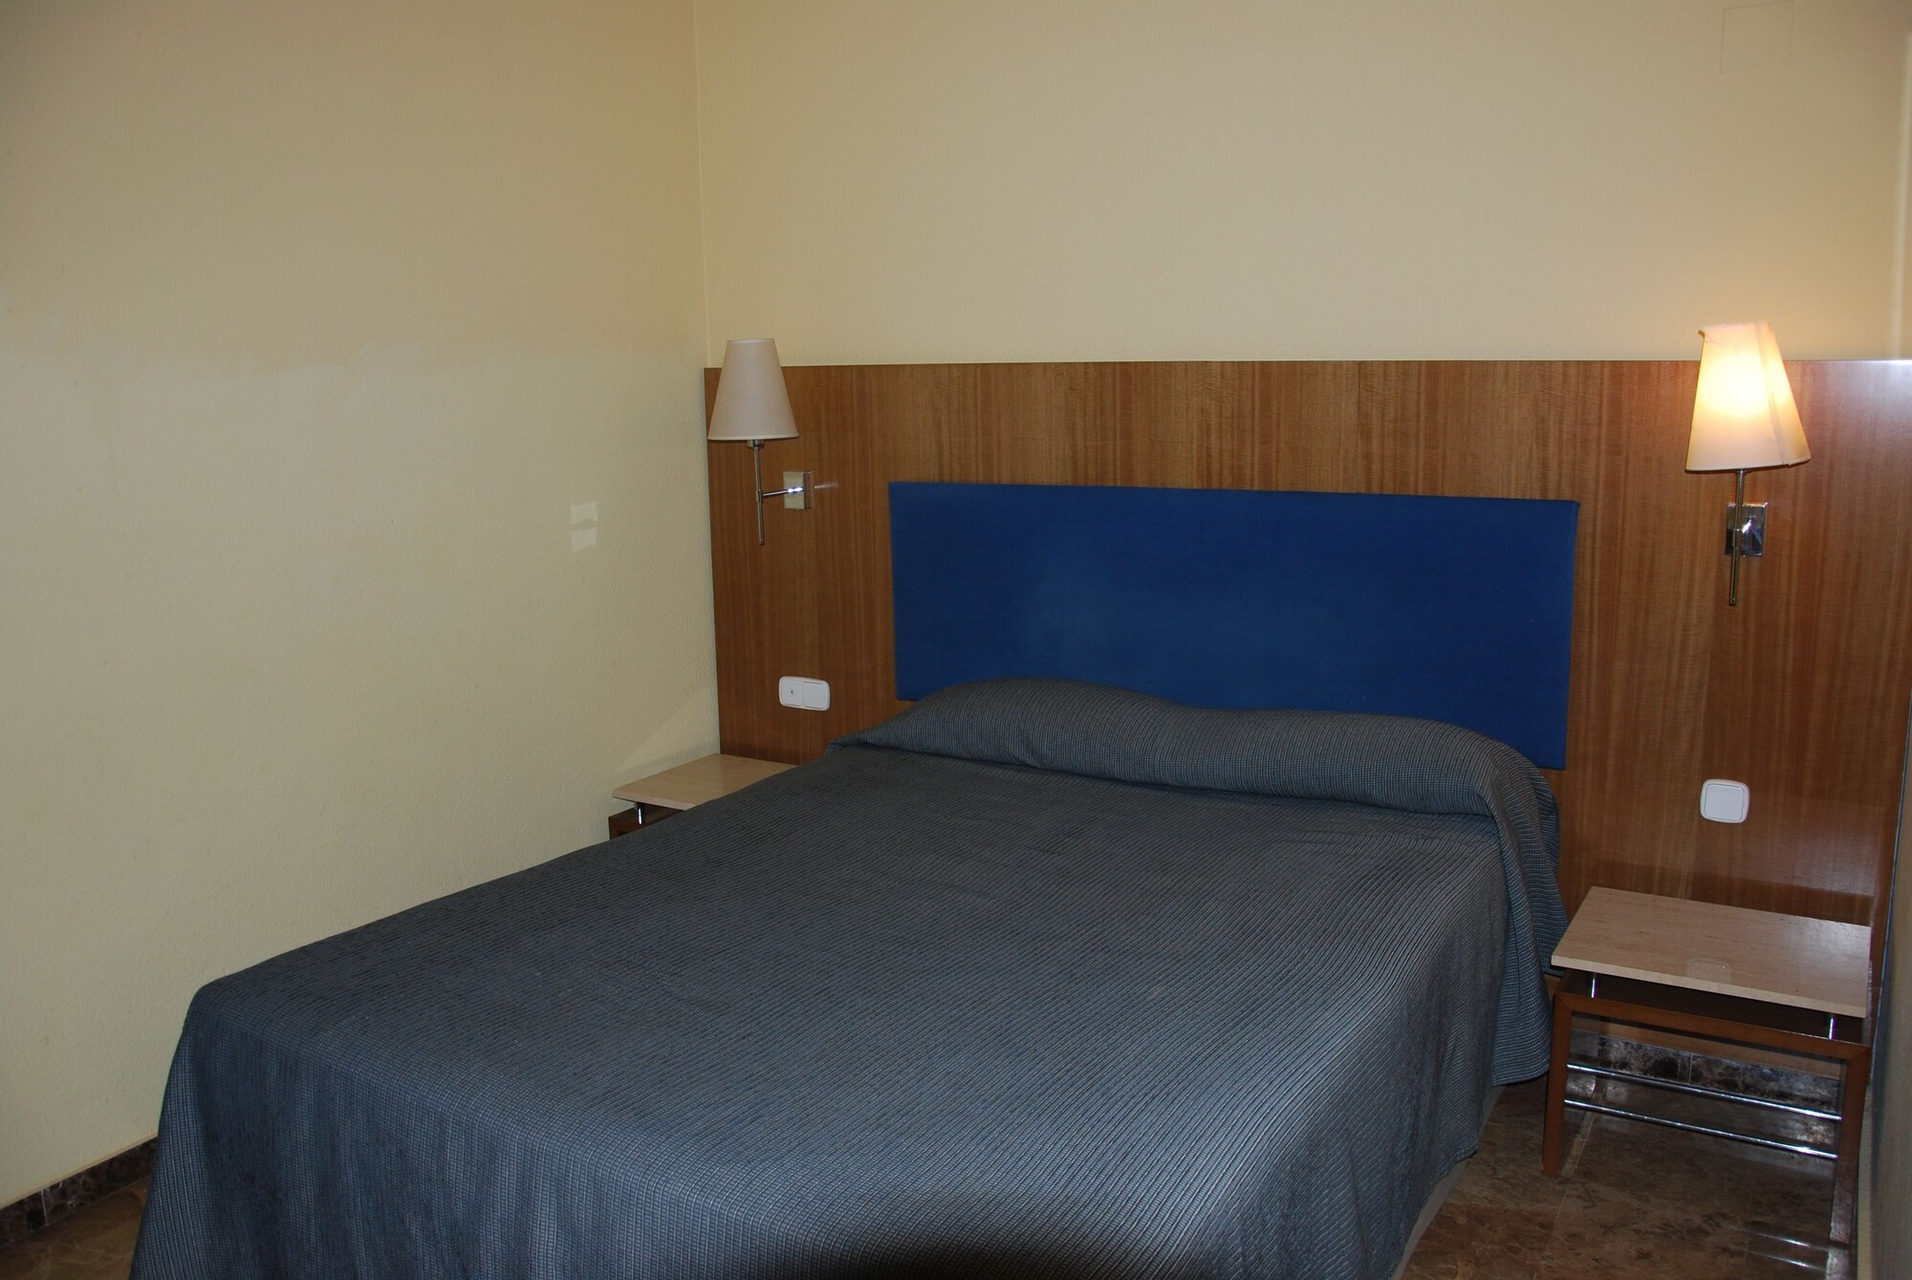 Bedroom 3, Nuevo Hotel Horus, Zaragoza